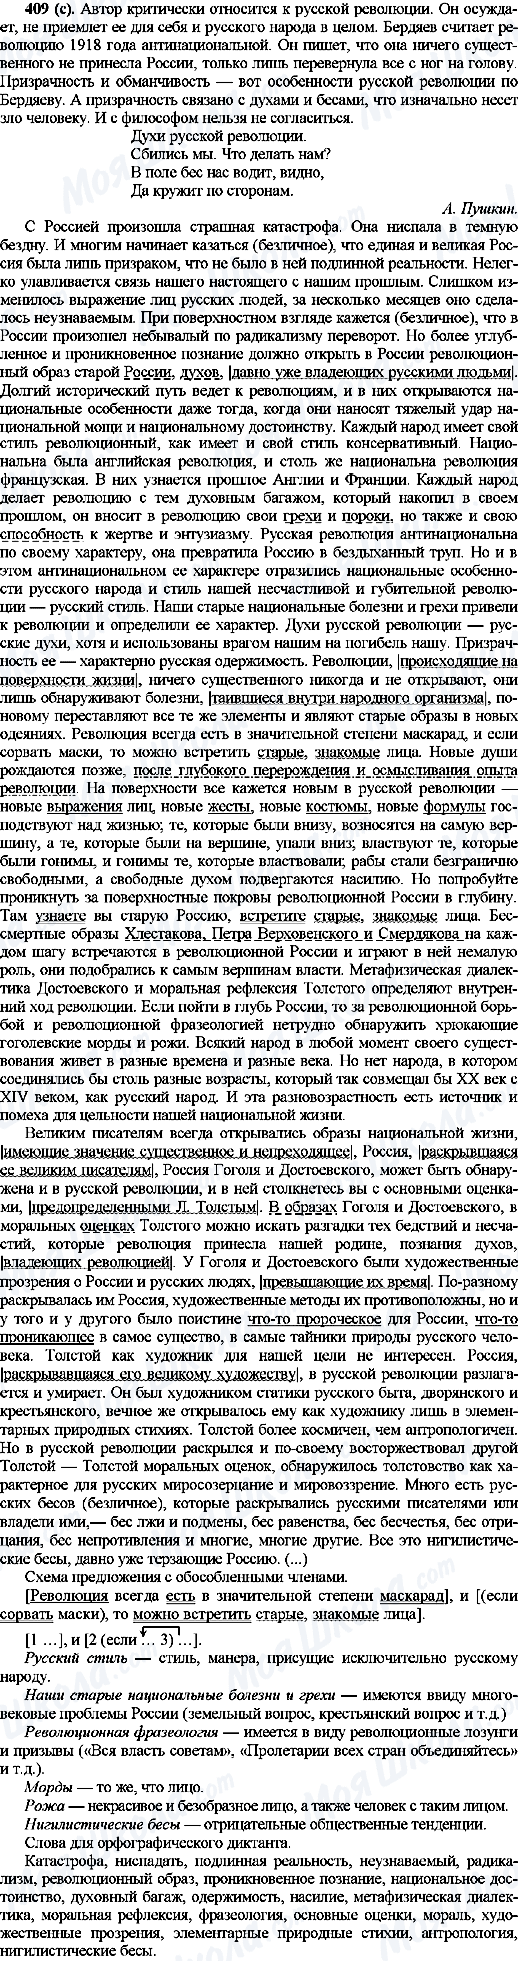 ГДЗ Російська мова 10 клас сторінка 409(с)